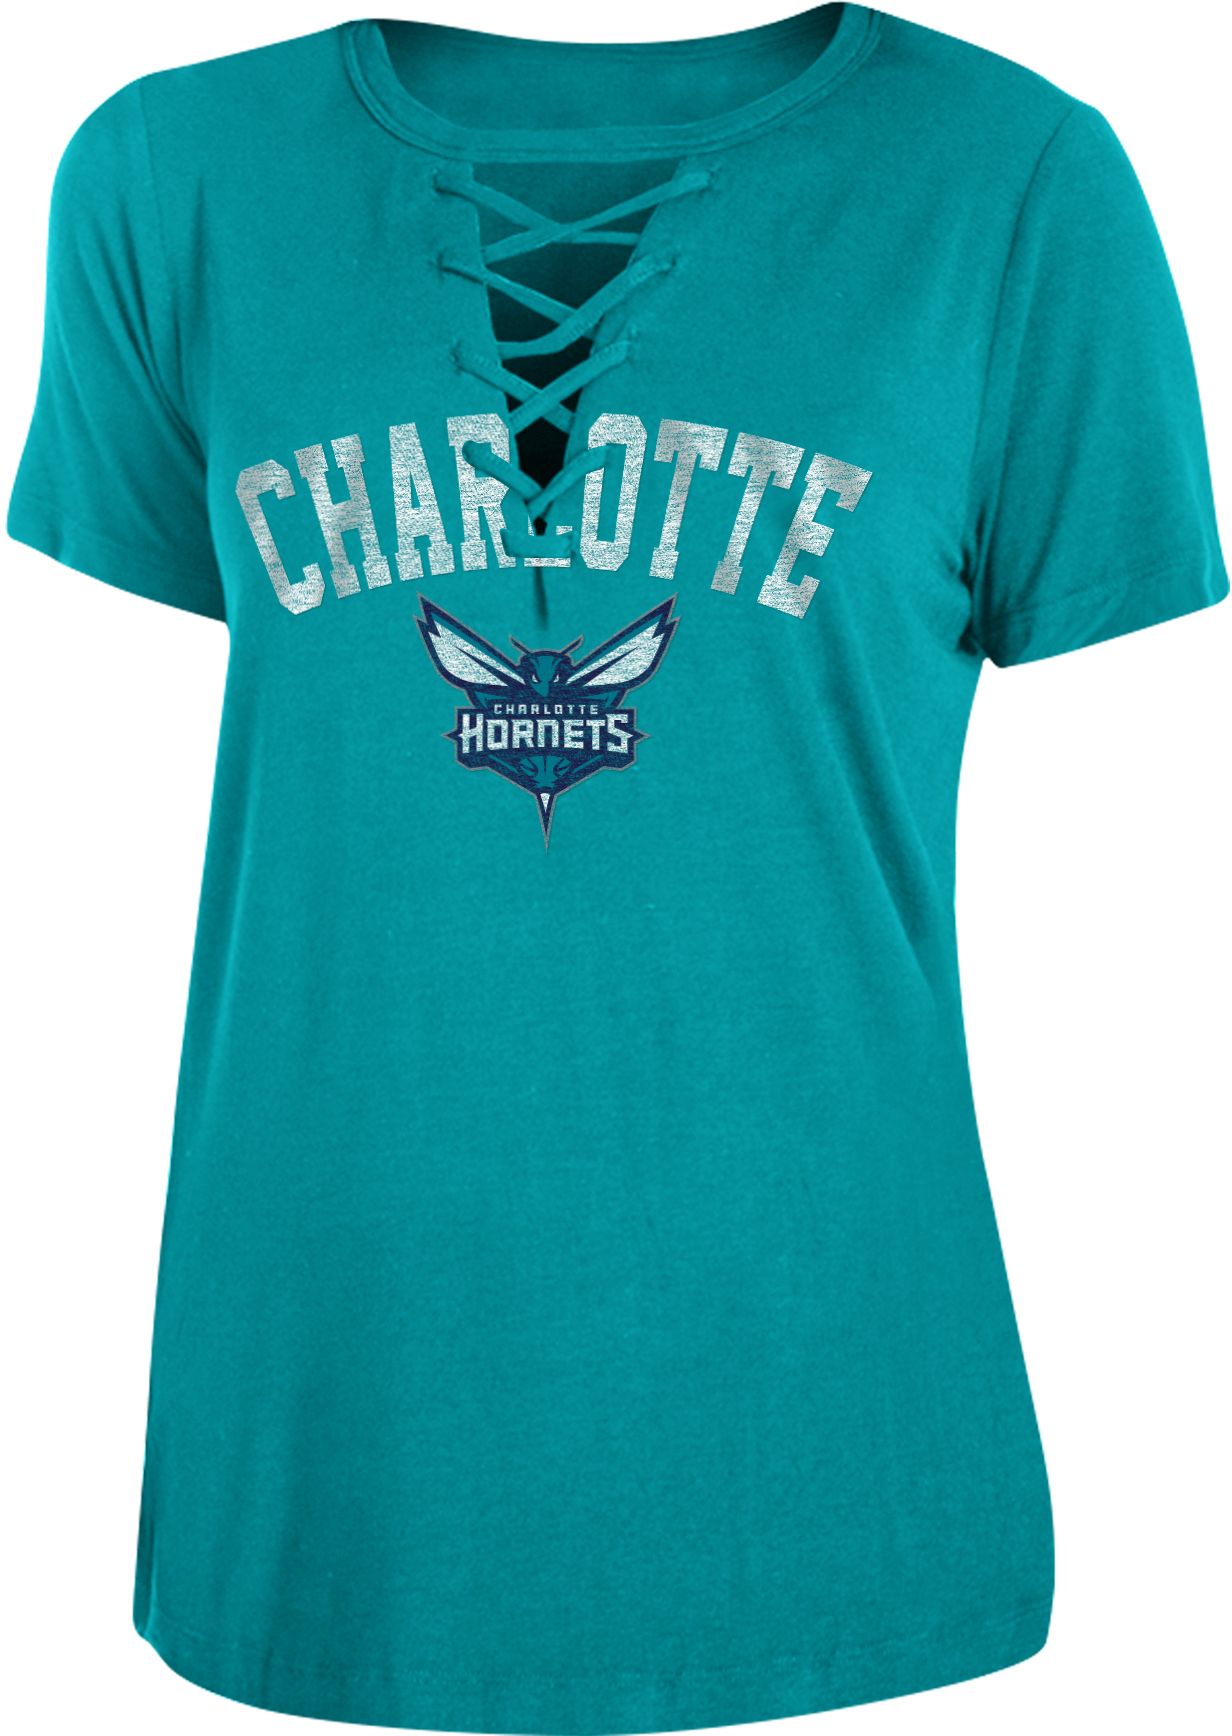 Charlotte Hornets Women's Apparel 